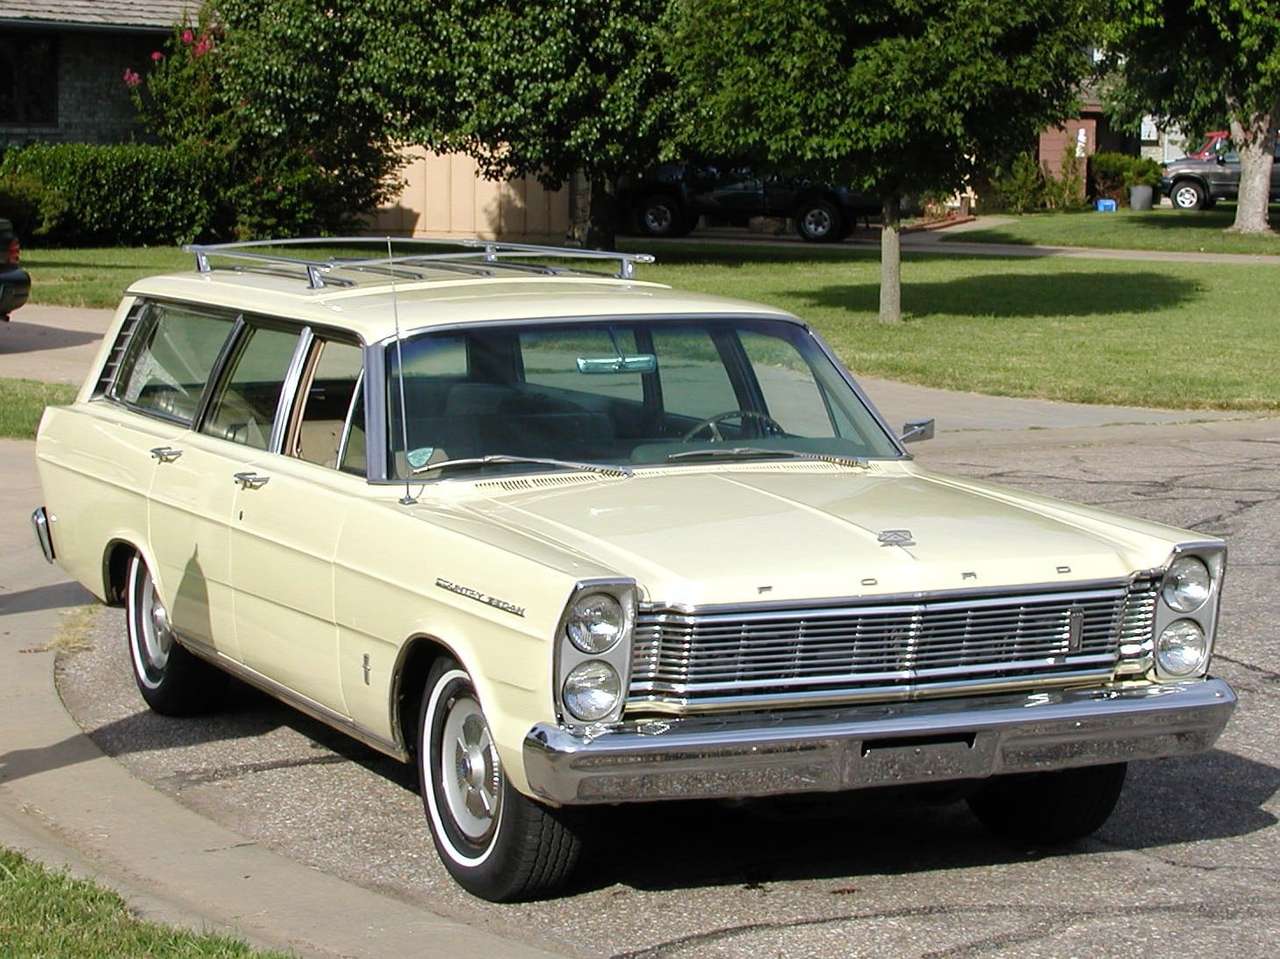 Универсал Ford Country 1965 года выпуска онлайн-пазл